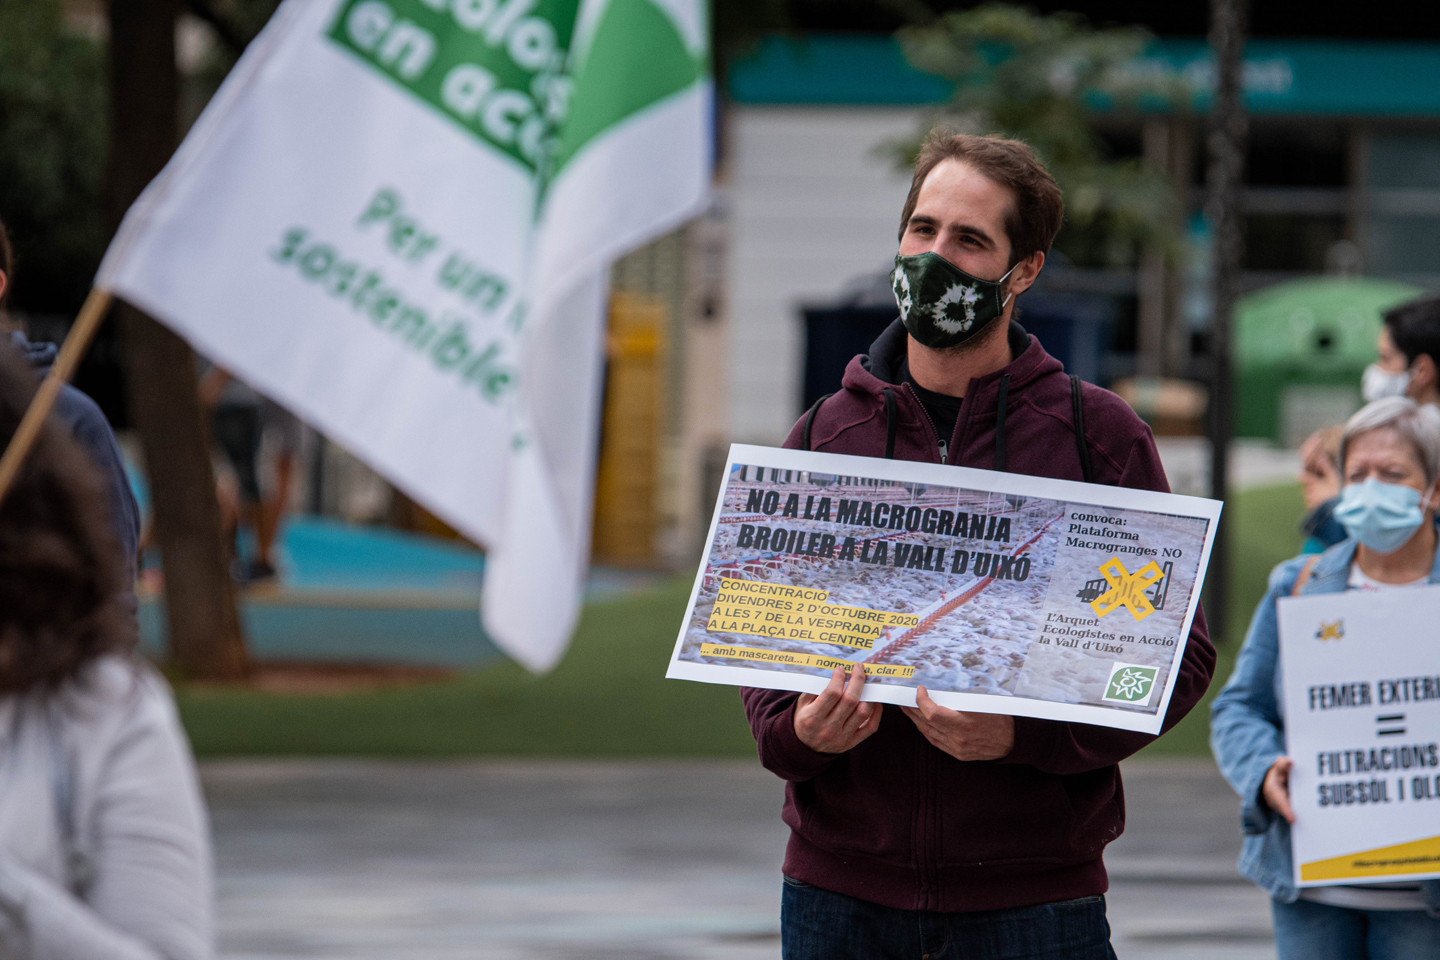 L'emergència climàtica no atura el boom de macrogranges al País Valencià